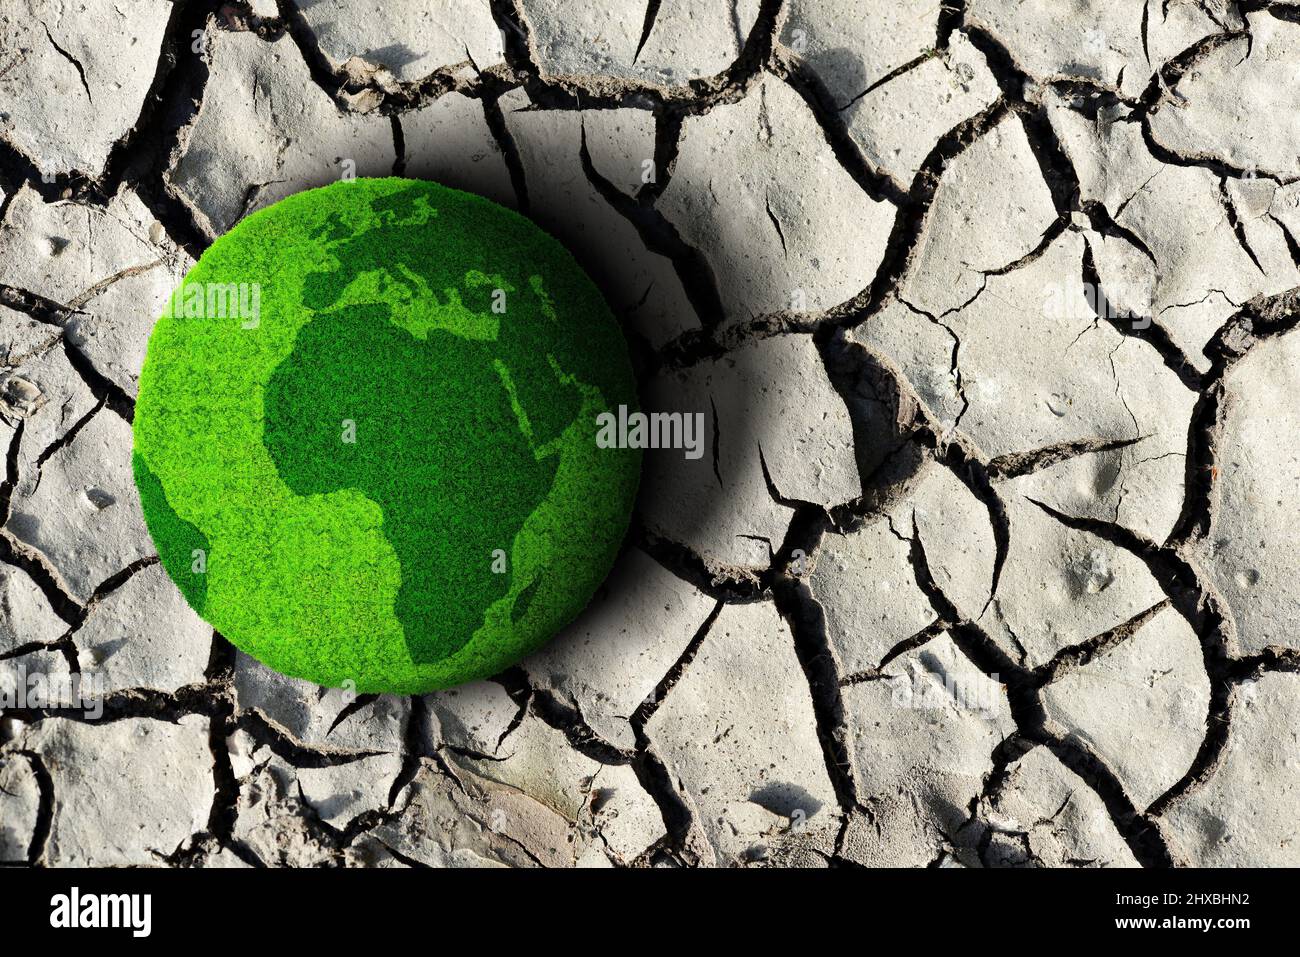 Planeta verde en el suelo seco agrietado. Concepto de cambio climático o calentamiento global. Foto de stock